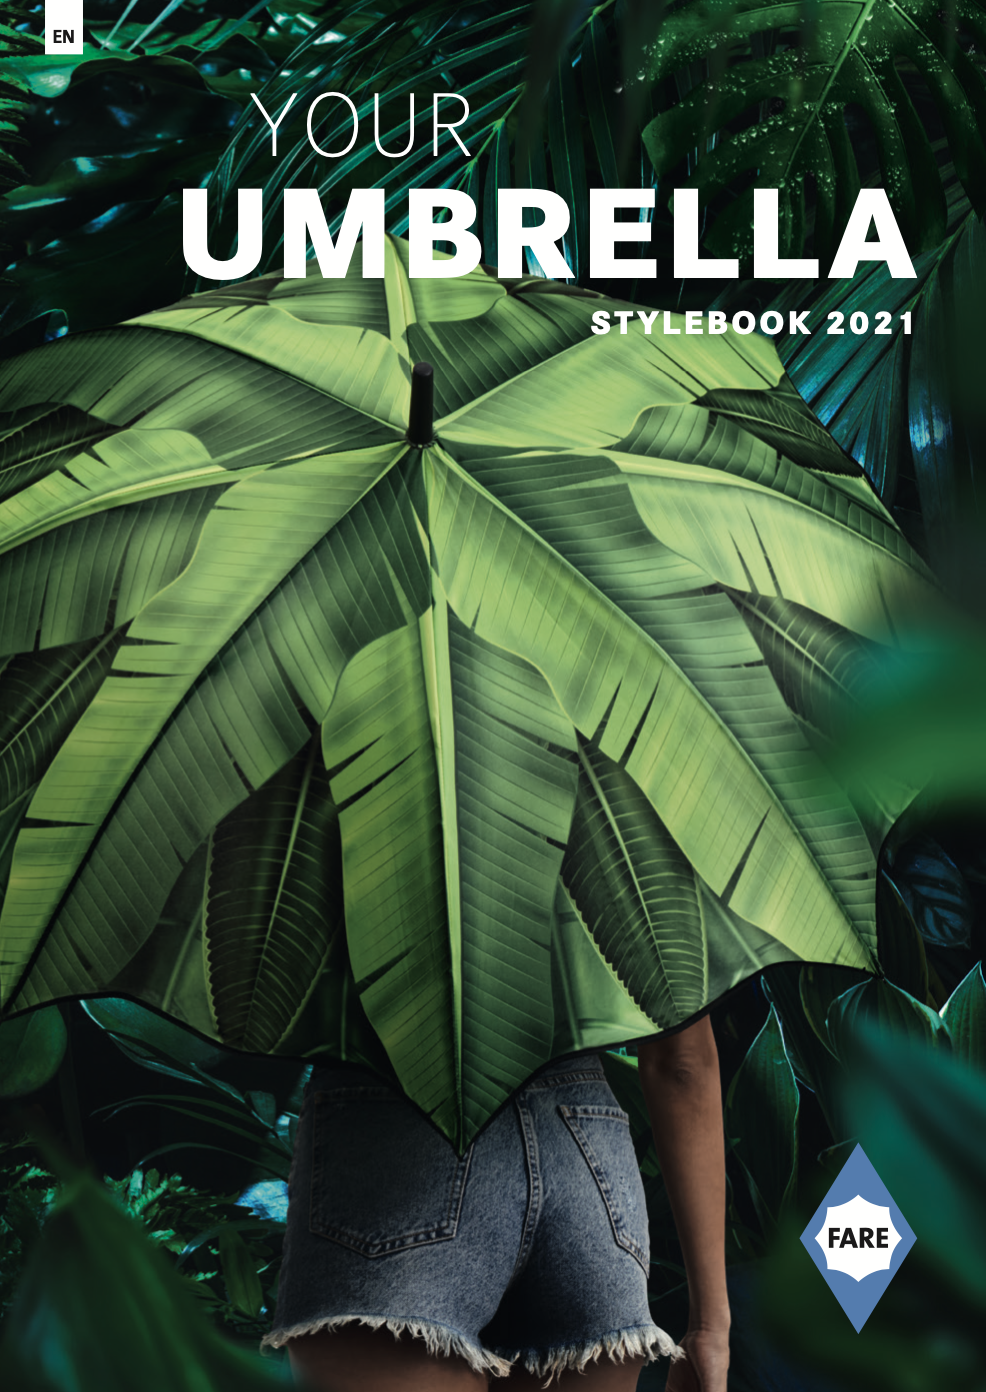 Your umbrella 2021